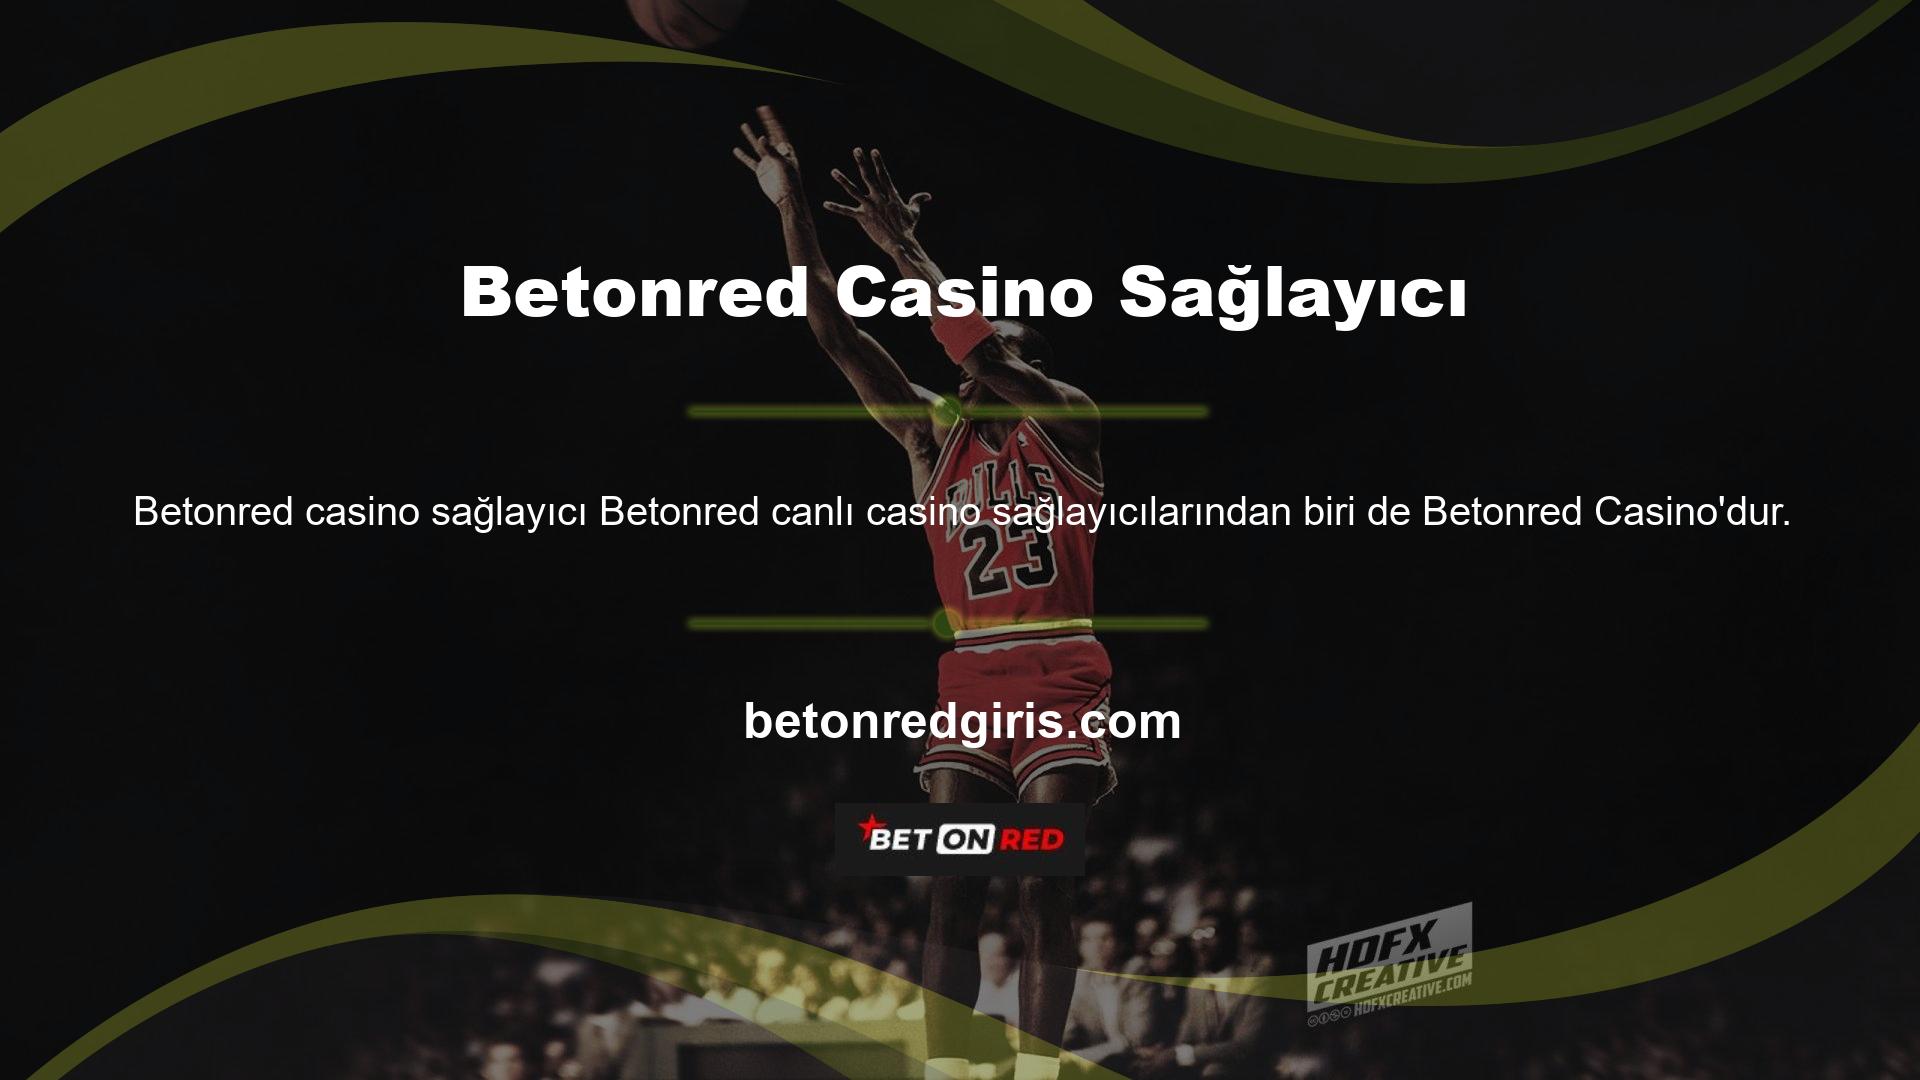 Betonred Casino, kurulduğu günden bu yana kurulup gelişen online casino platformları arasında birçok kez Yılın En İyi Casino Sağlayıcısı seçilmiştir